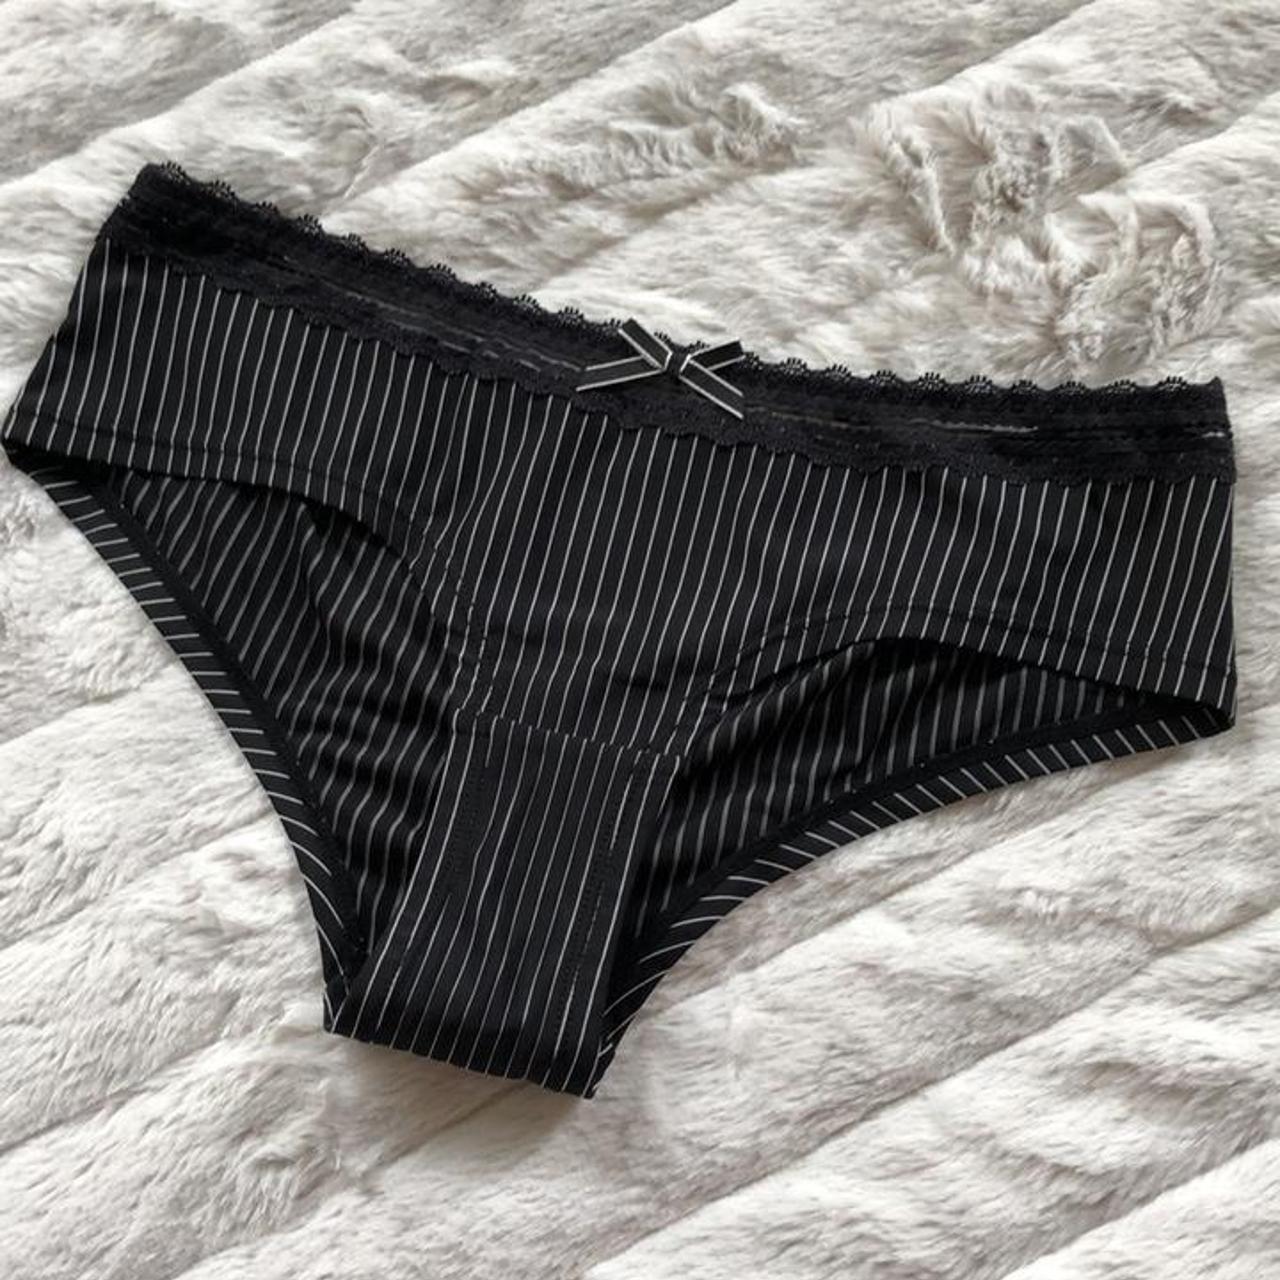 Product Image 1 - Pimkie #Y2K tuxedo panties

Super cute